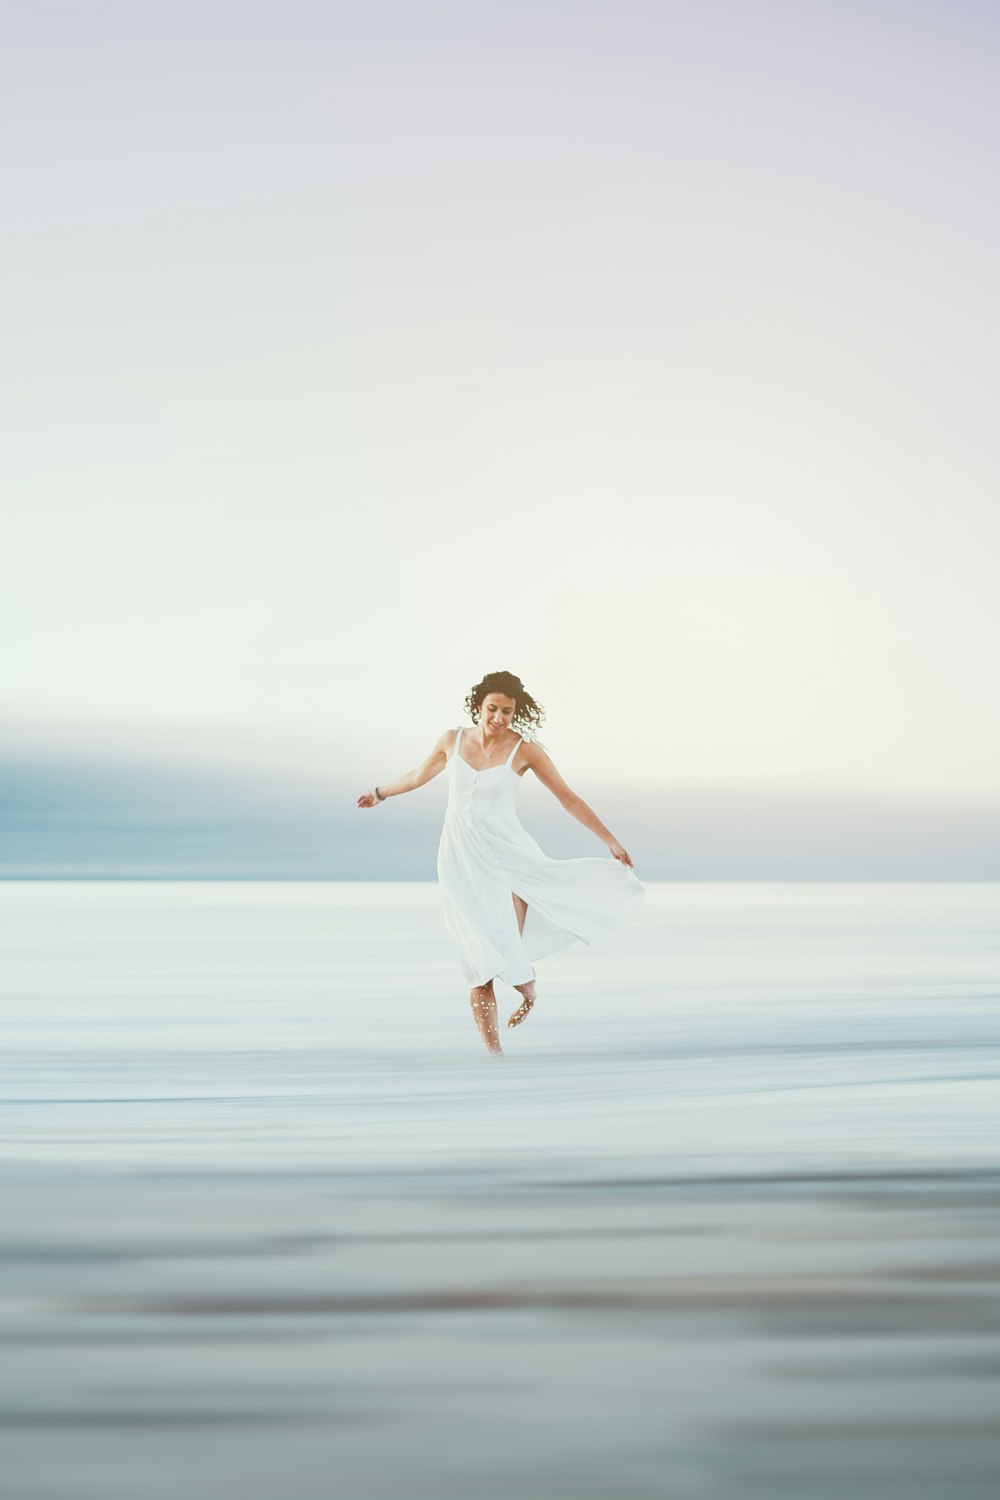 공중에서 점프하는 하얀 드레스를 입은 여자